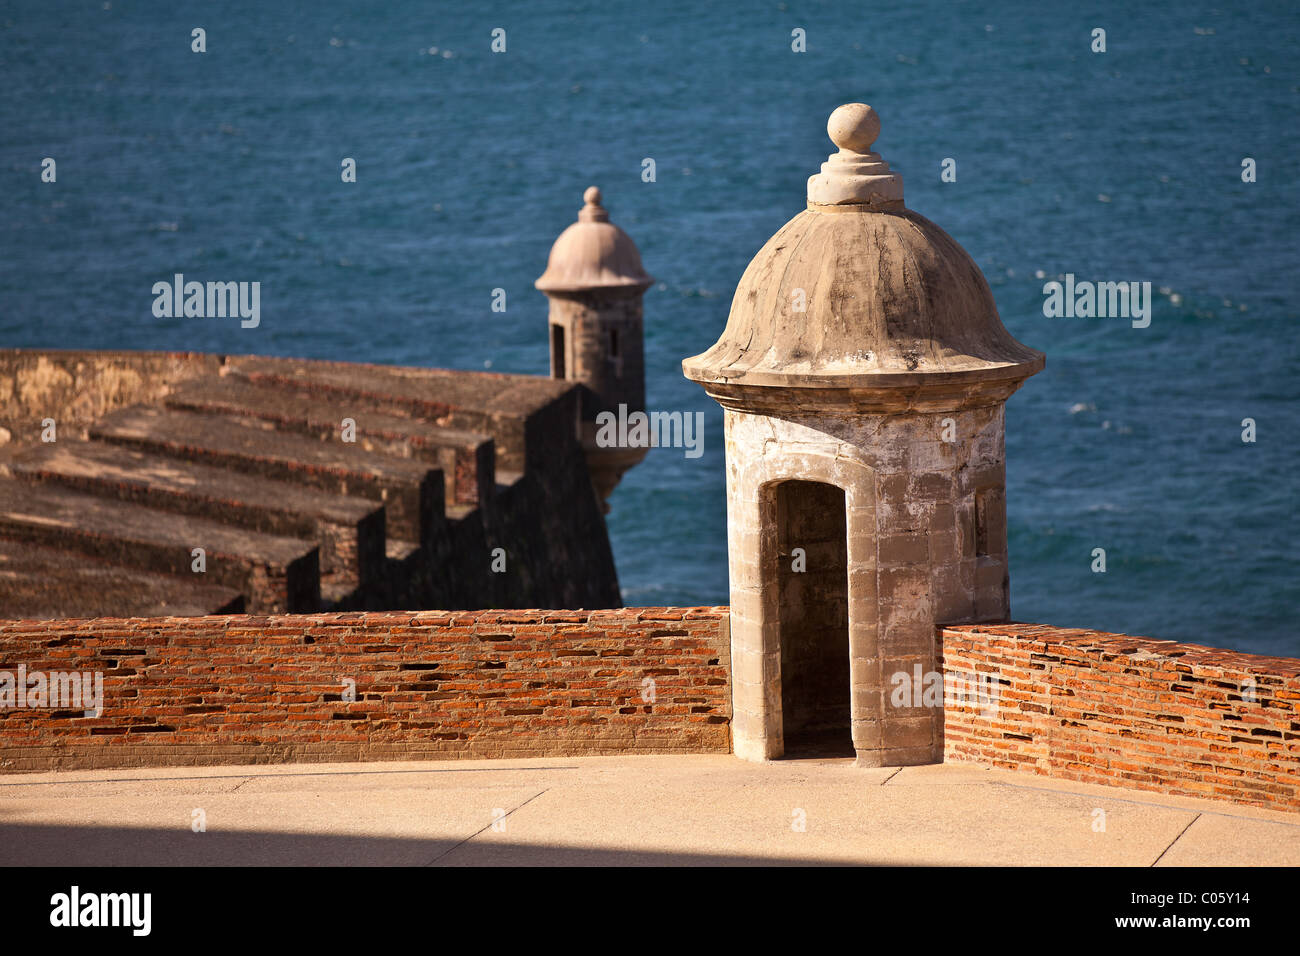 Brüstung-Castillo de San Crist — bal Old San Juan, Puerto Rico. Stockfoto